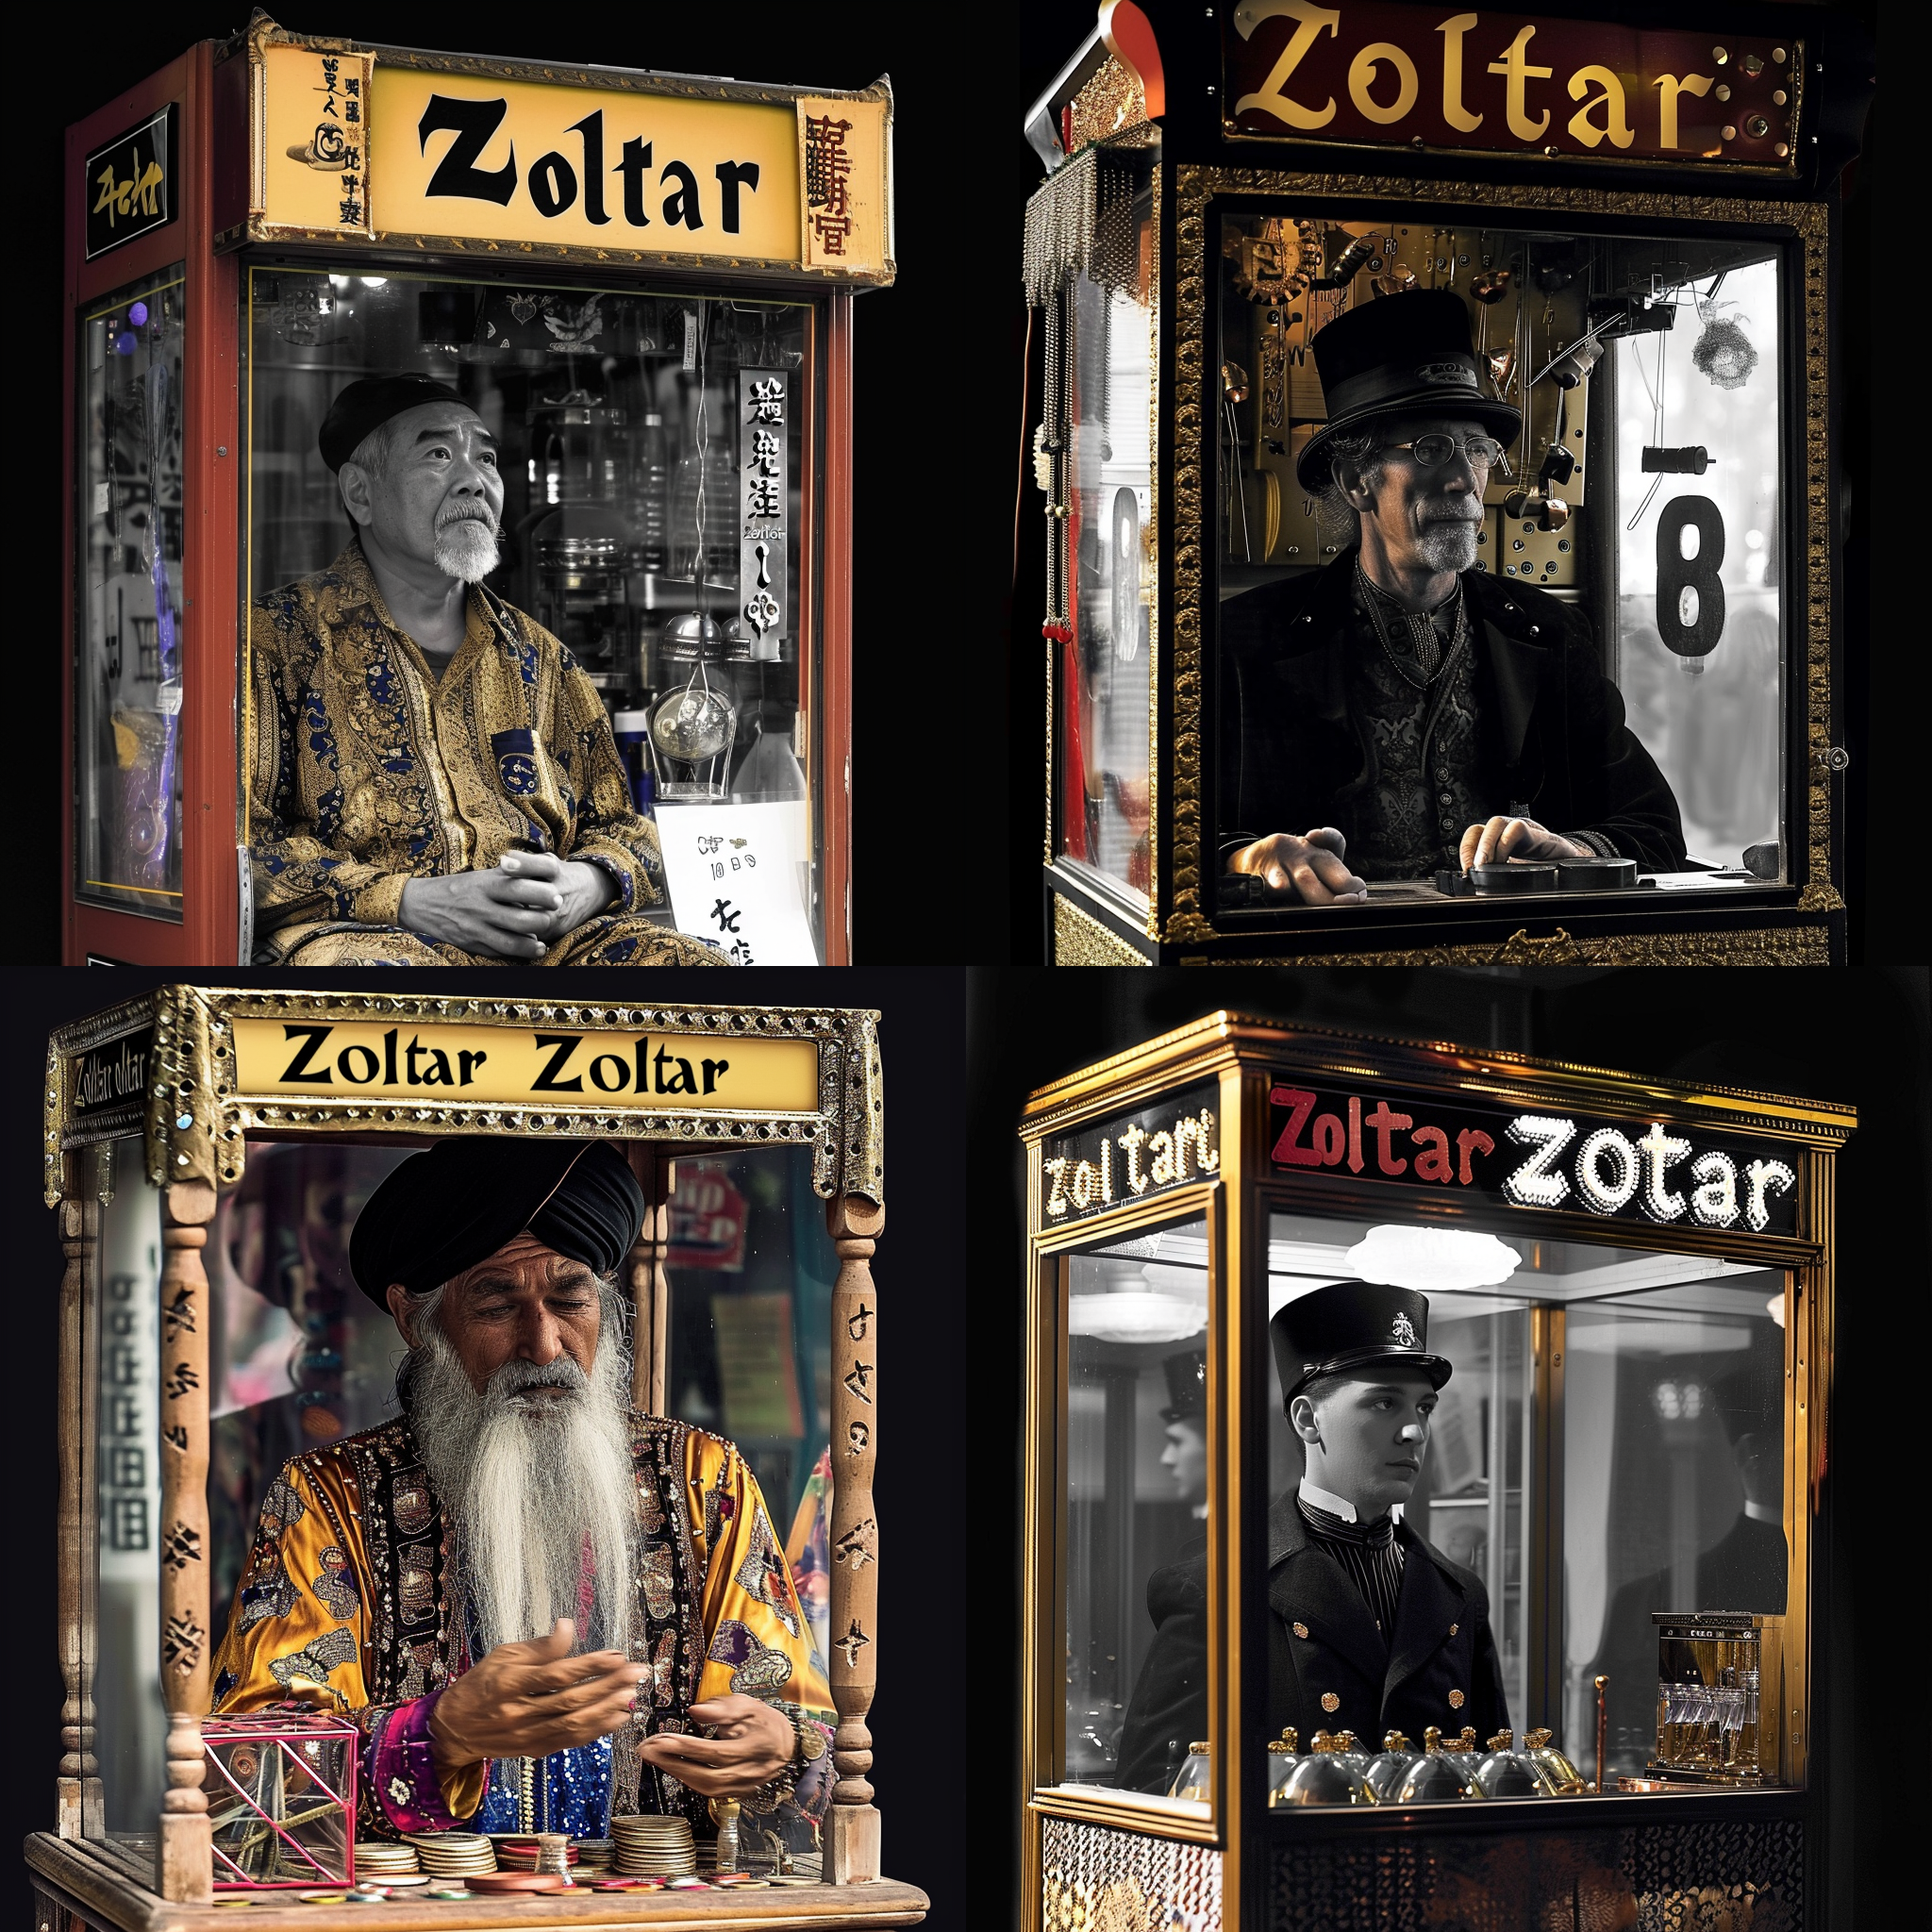 Vier KI-Generierte Zoltars: asiatisch, Steampunk, indischer Weiser, gruseliger Robo-Schaffner - jeweils im Glaskasten eines Jahrmarktsautomaten